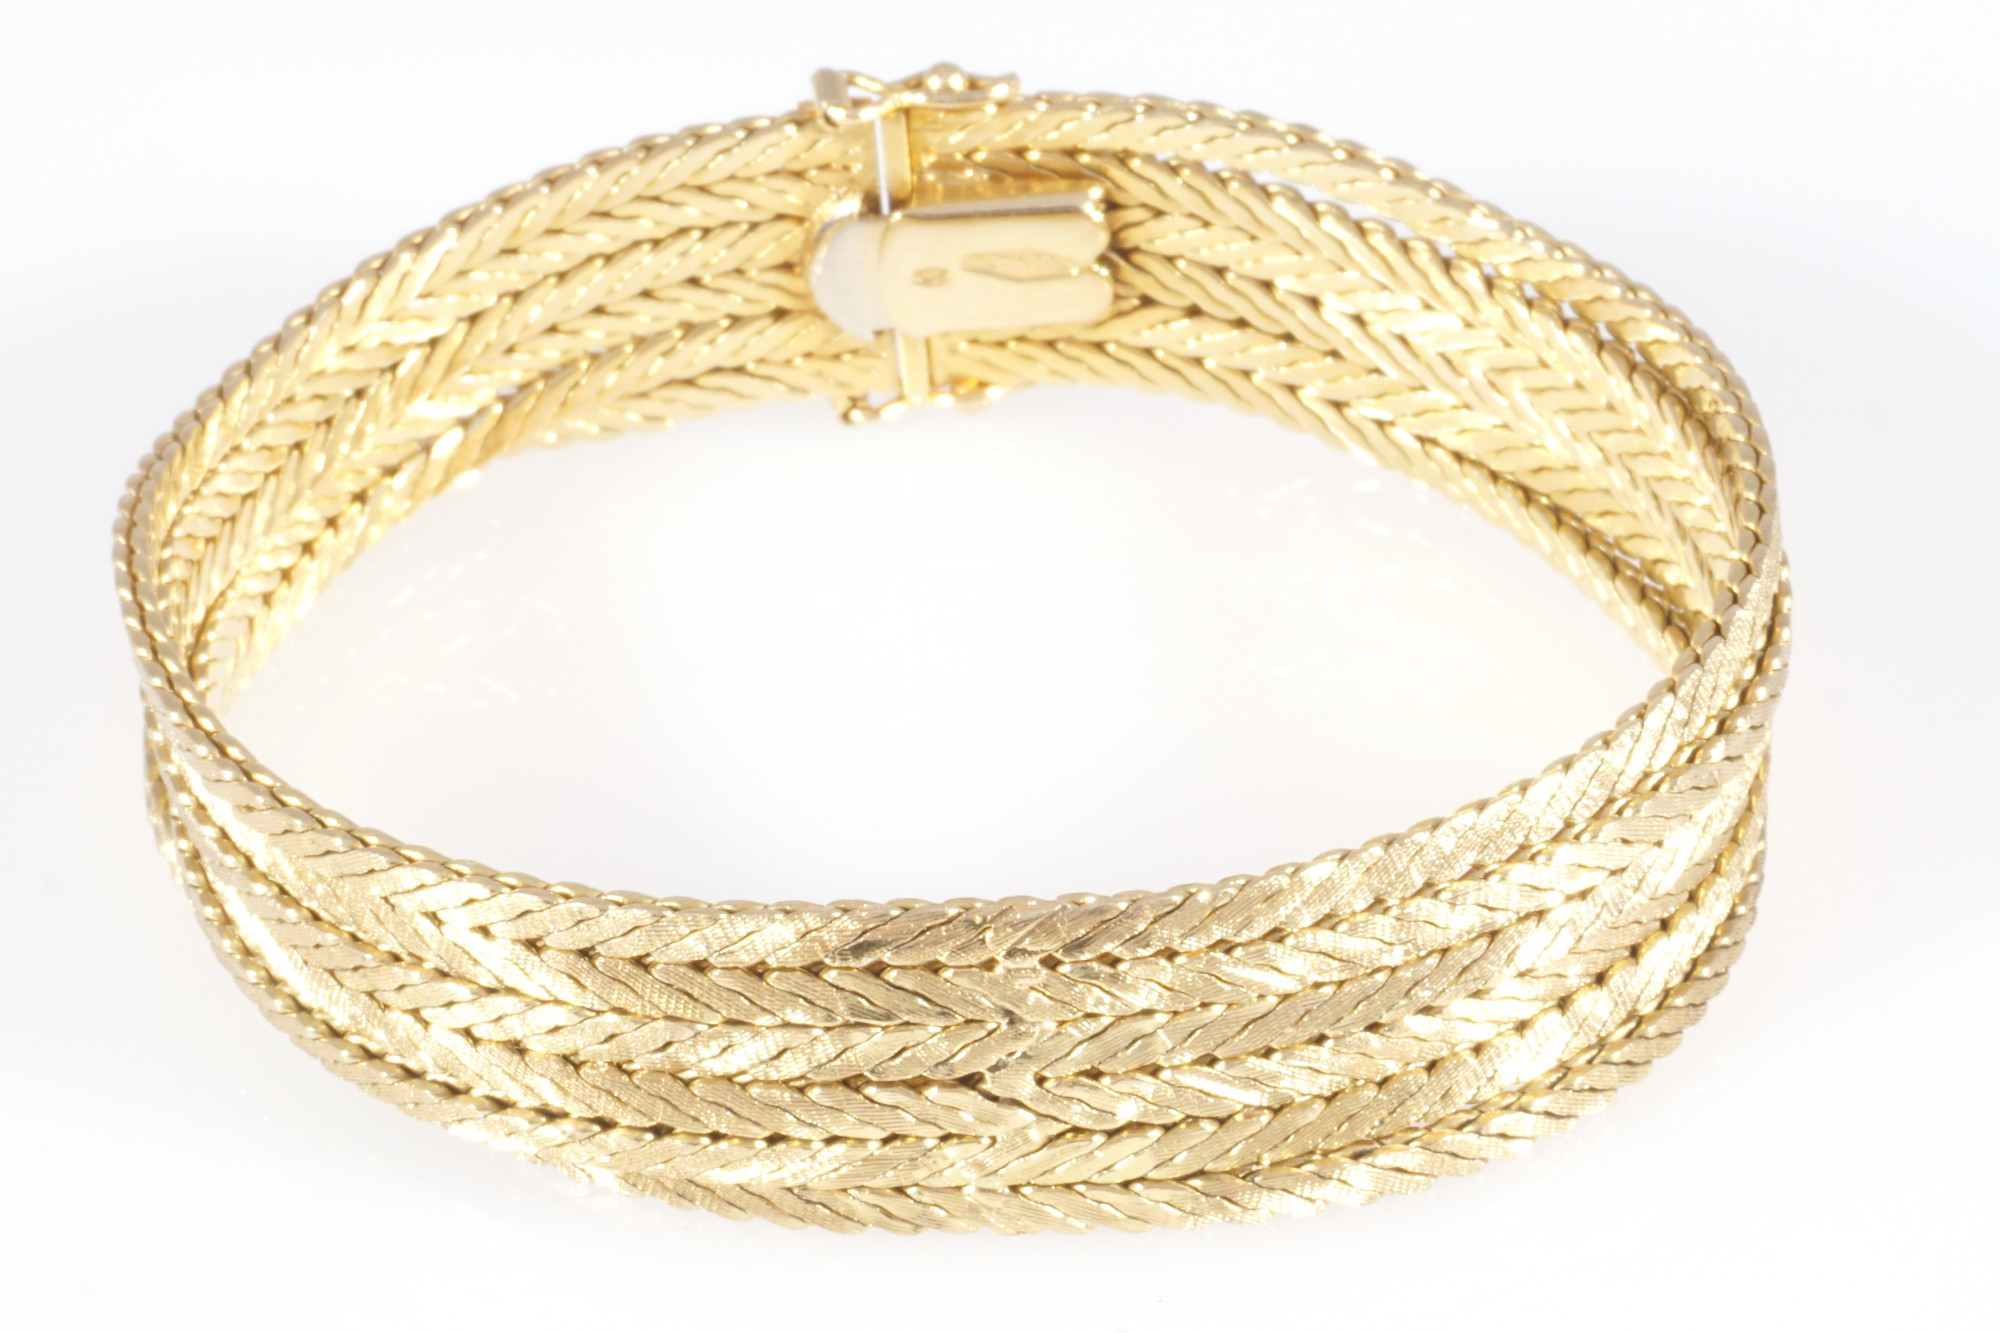 750 six-rowed gold bracelet, 18K Gold sechsreihige Armband, - Image 3 of 5